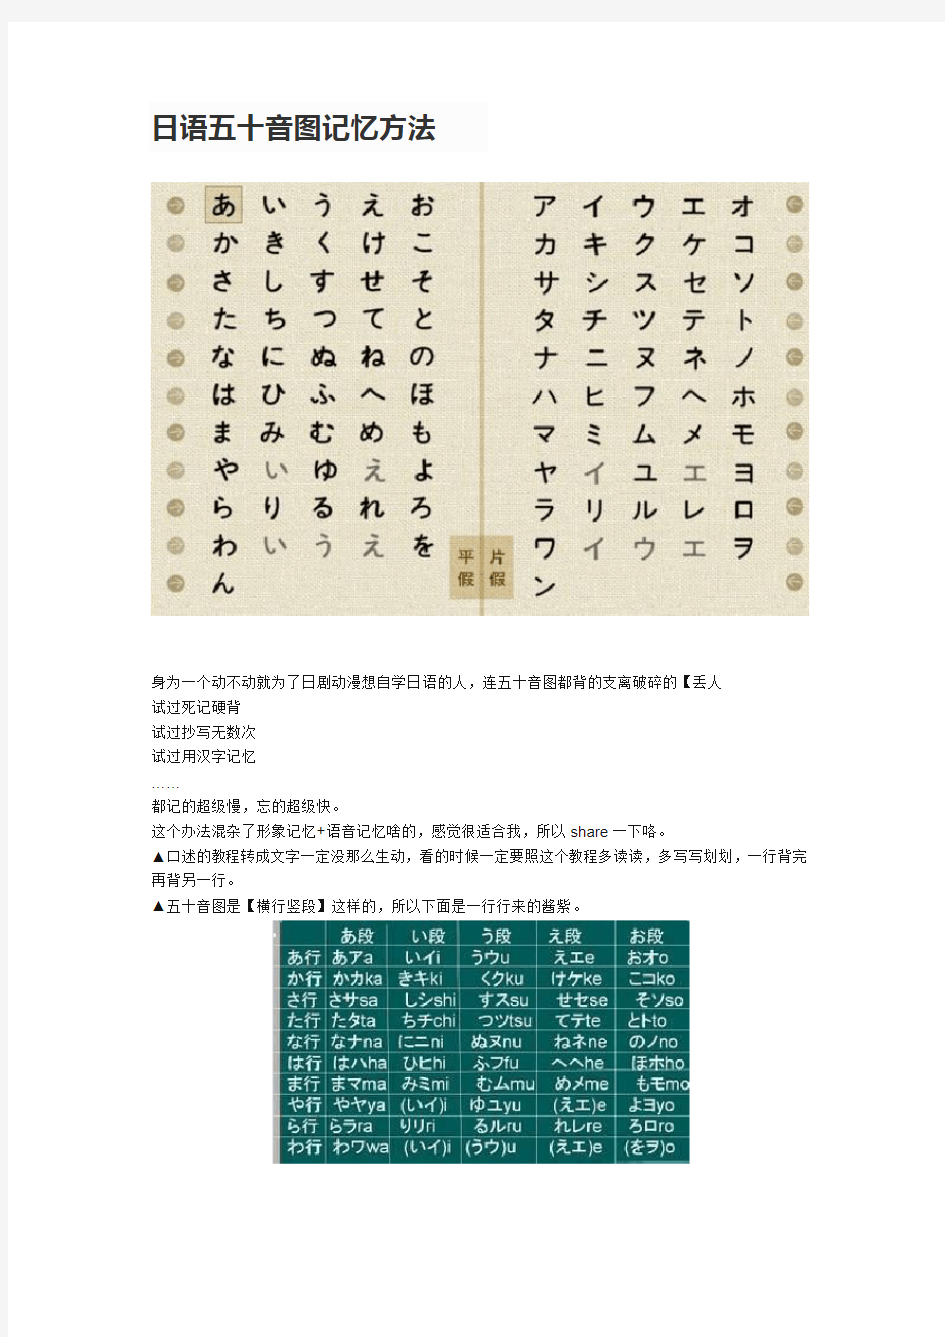 【潭州教育日语学习】超级好用日语五十音图记忆方法